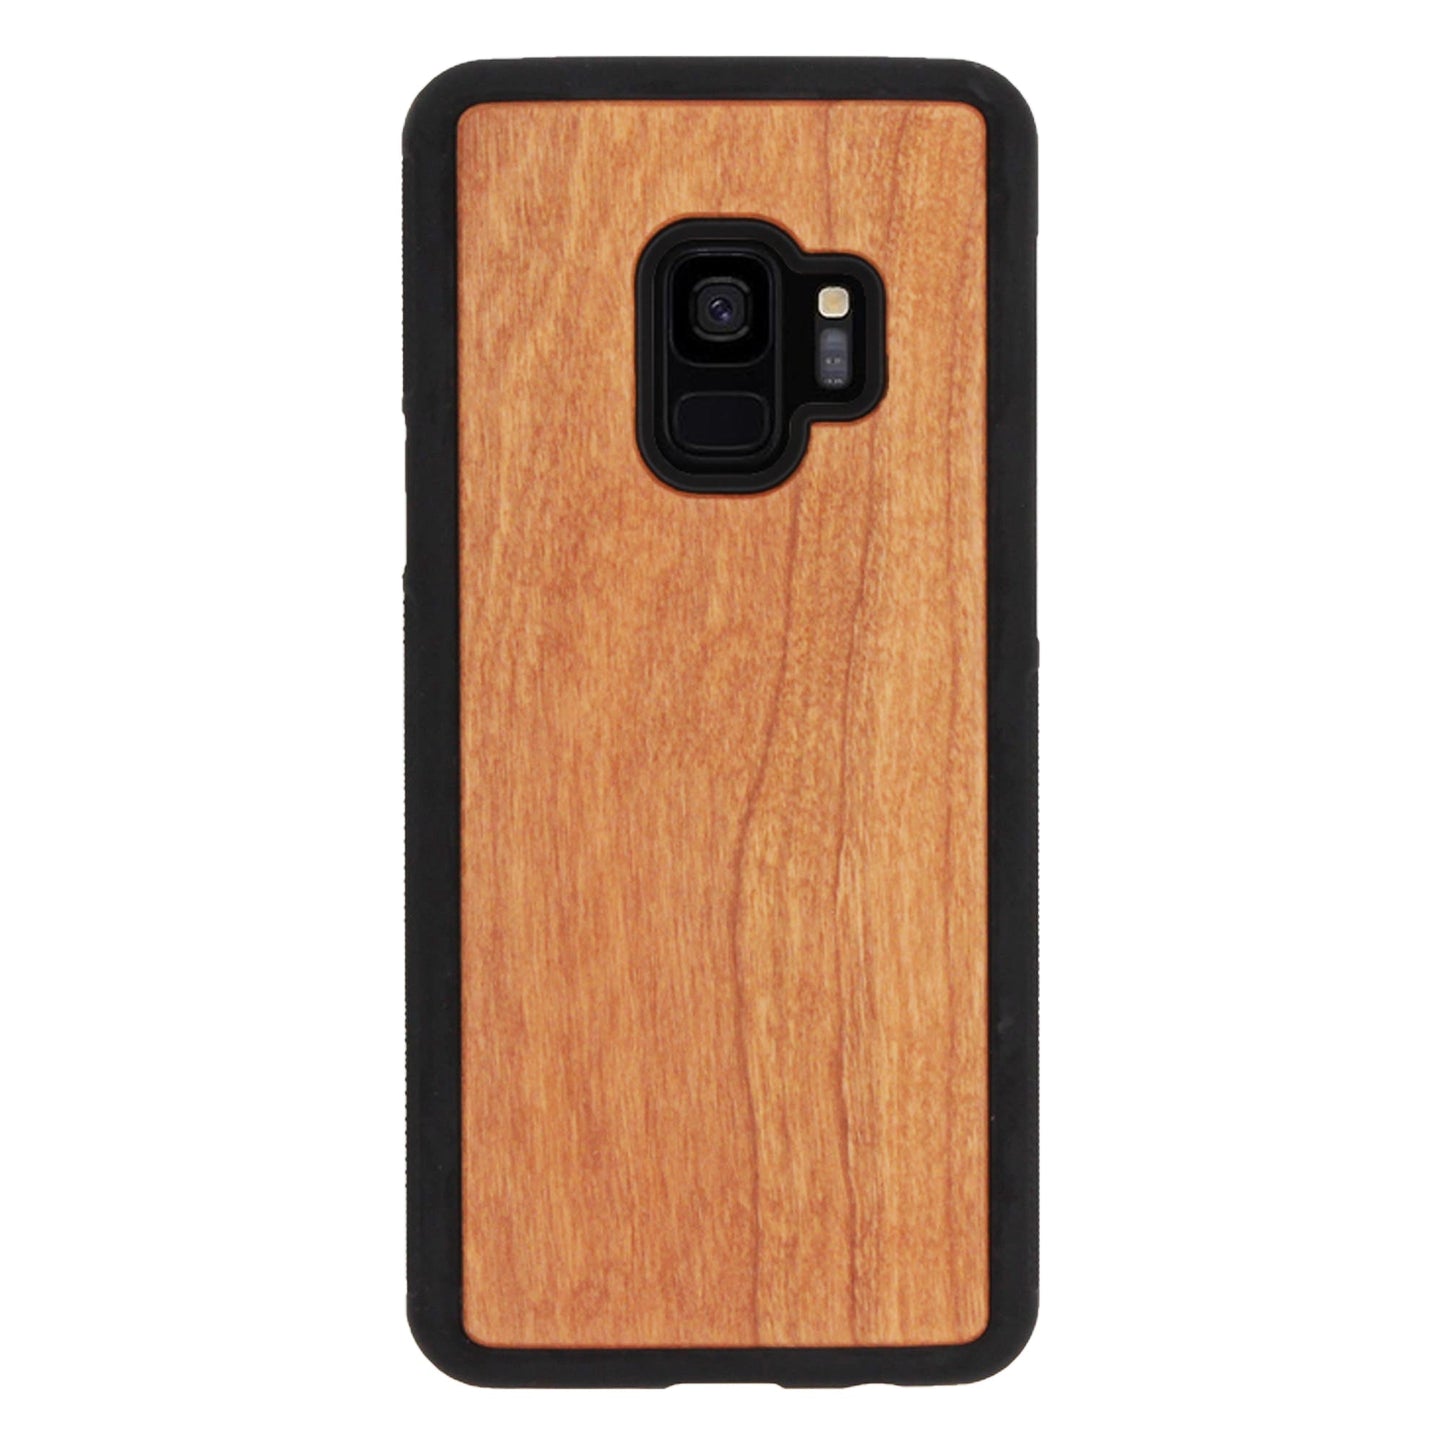 Cherry wood Eden case for Samsung Galaxy S9